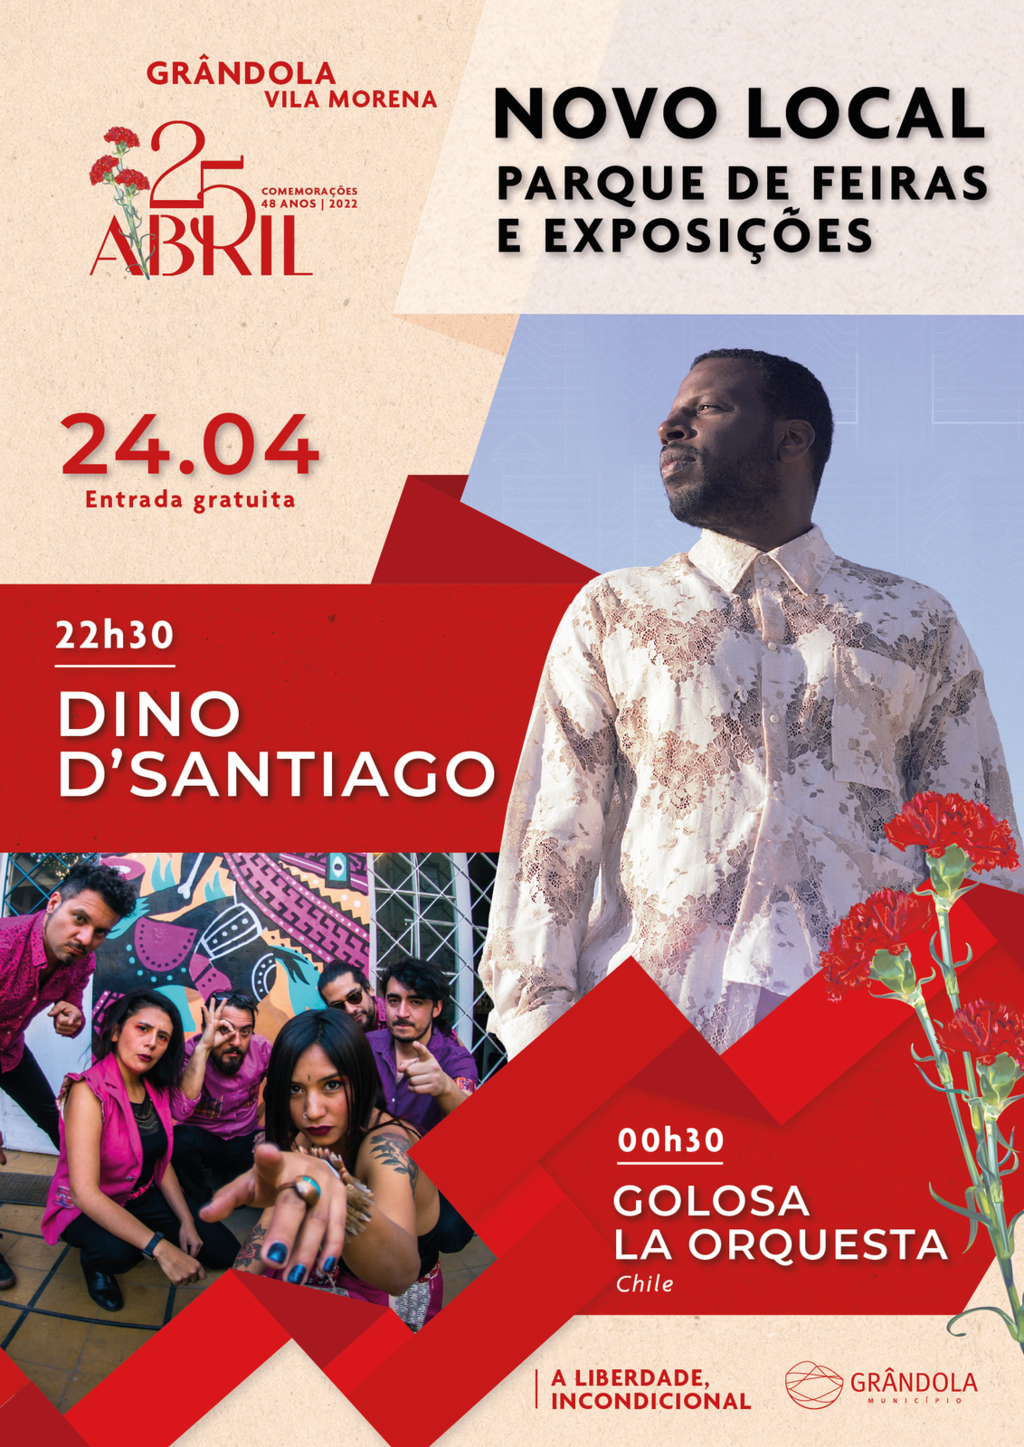 Abril em Grândola, Vila Morena A Liberdade, Incondicional | Dino D'Santiago e Golosa La Orquesta